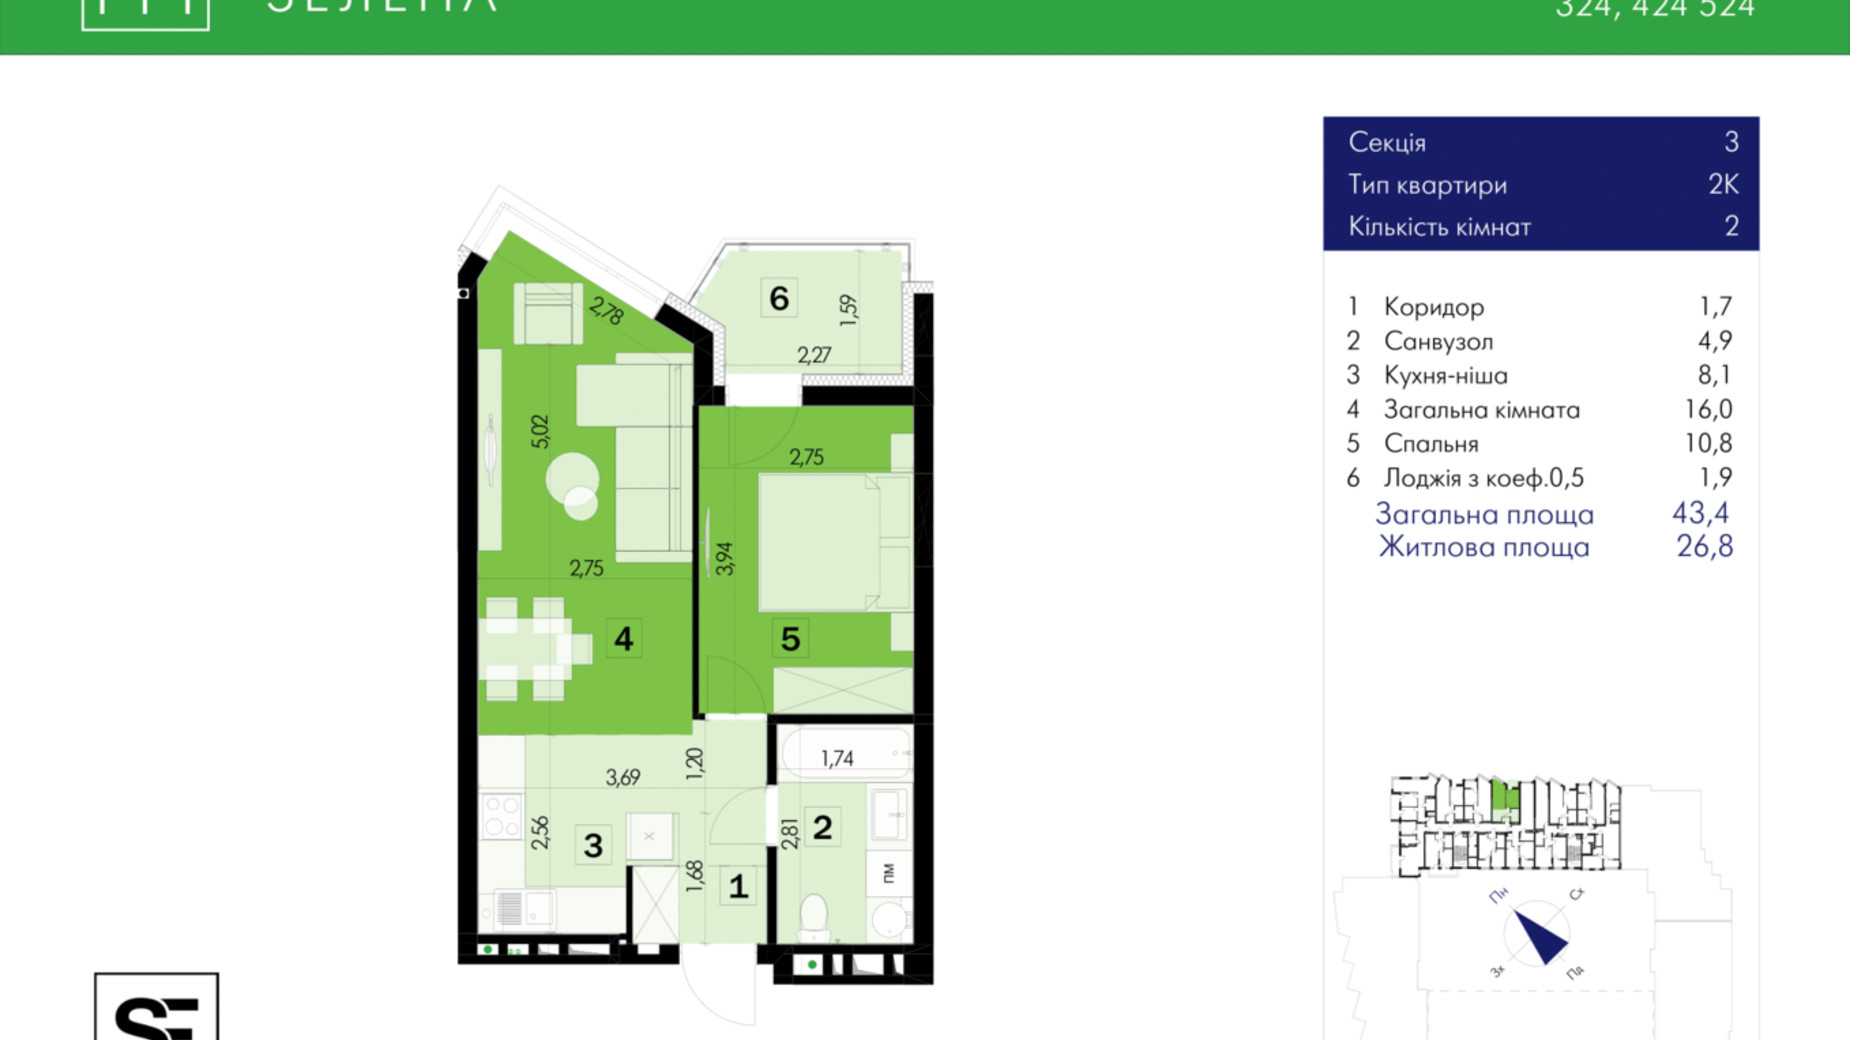 Планировка 2-комнатной квартиры в ЖК 111 Зеленая 43.4 м², фото 634022